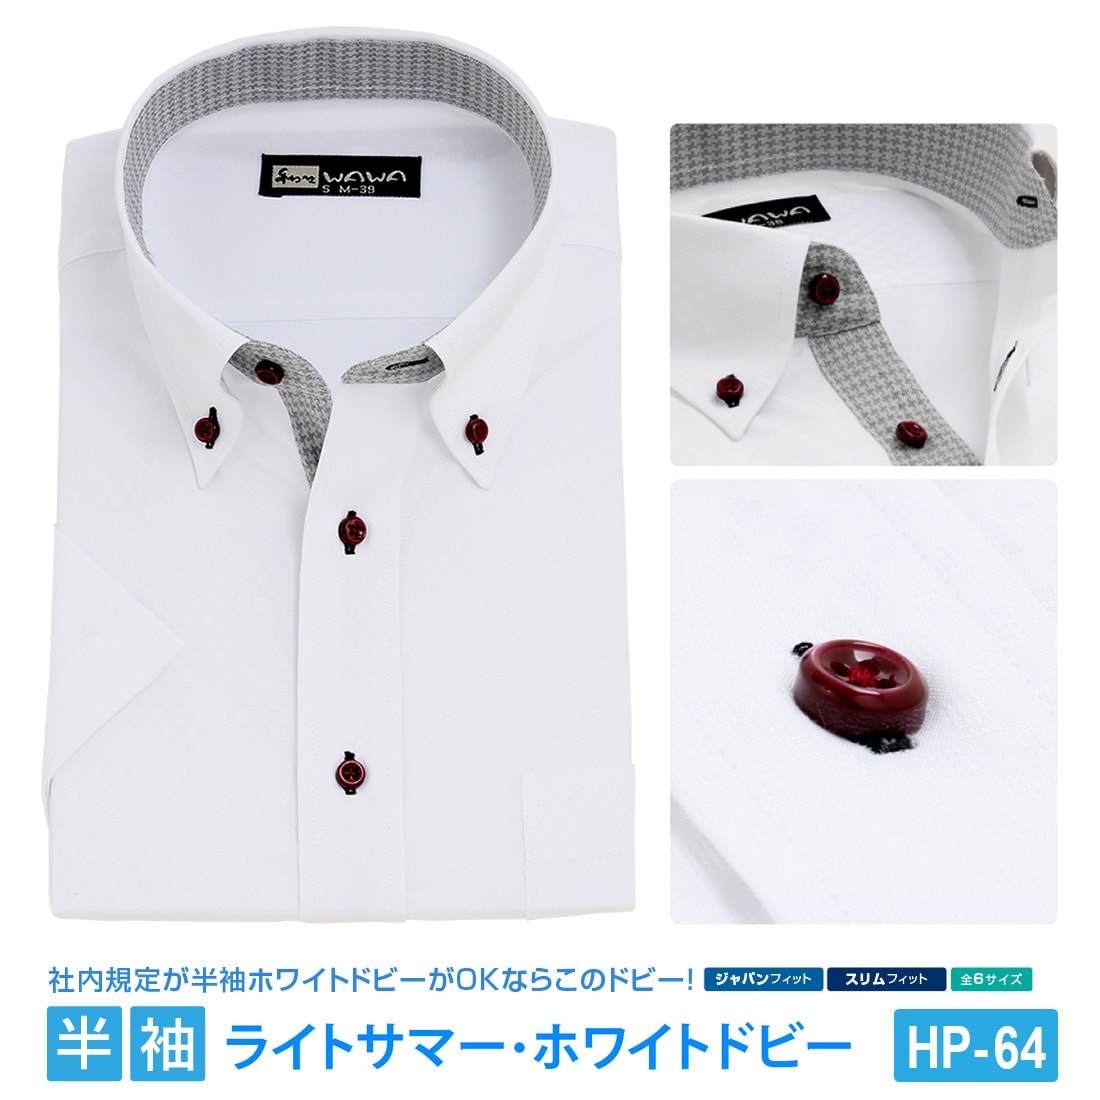 半袖 メンズ ドビー ホワイト ワイシャツ ボタンダウン 形態安定 白 Yシャツ ビジネス 6サイズ スリム M L 標準体 M L LL 3L  から選べる HP-64-WAWAJAPAN